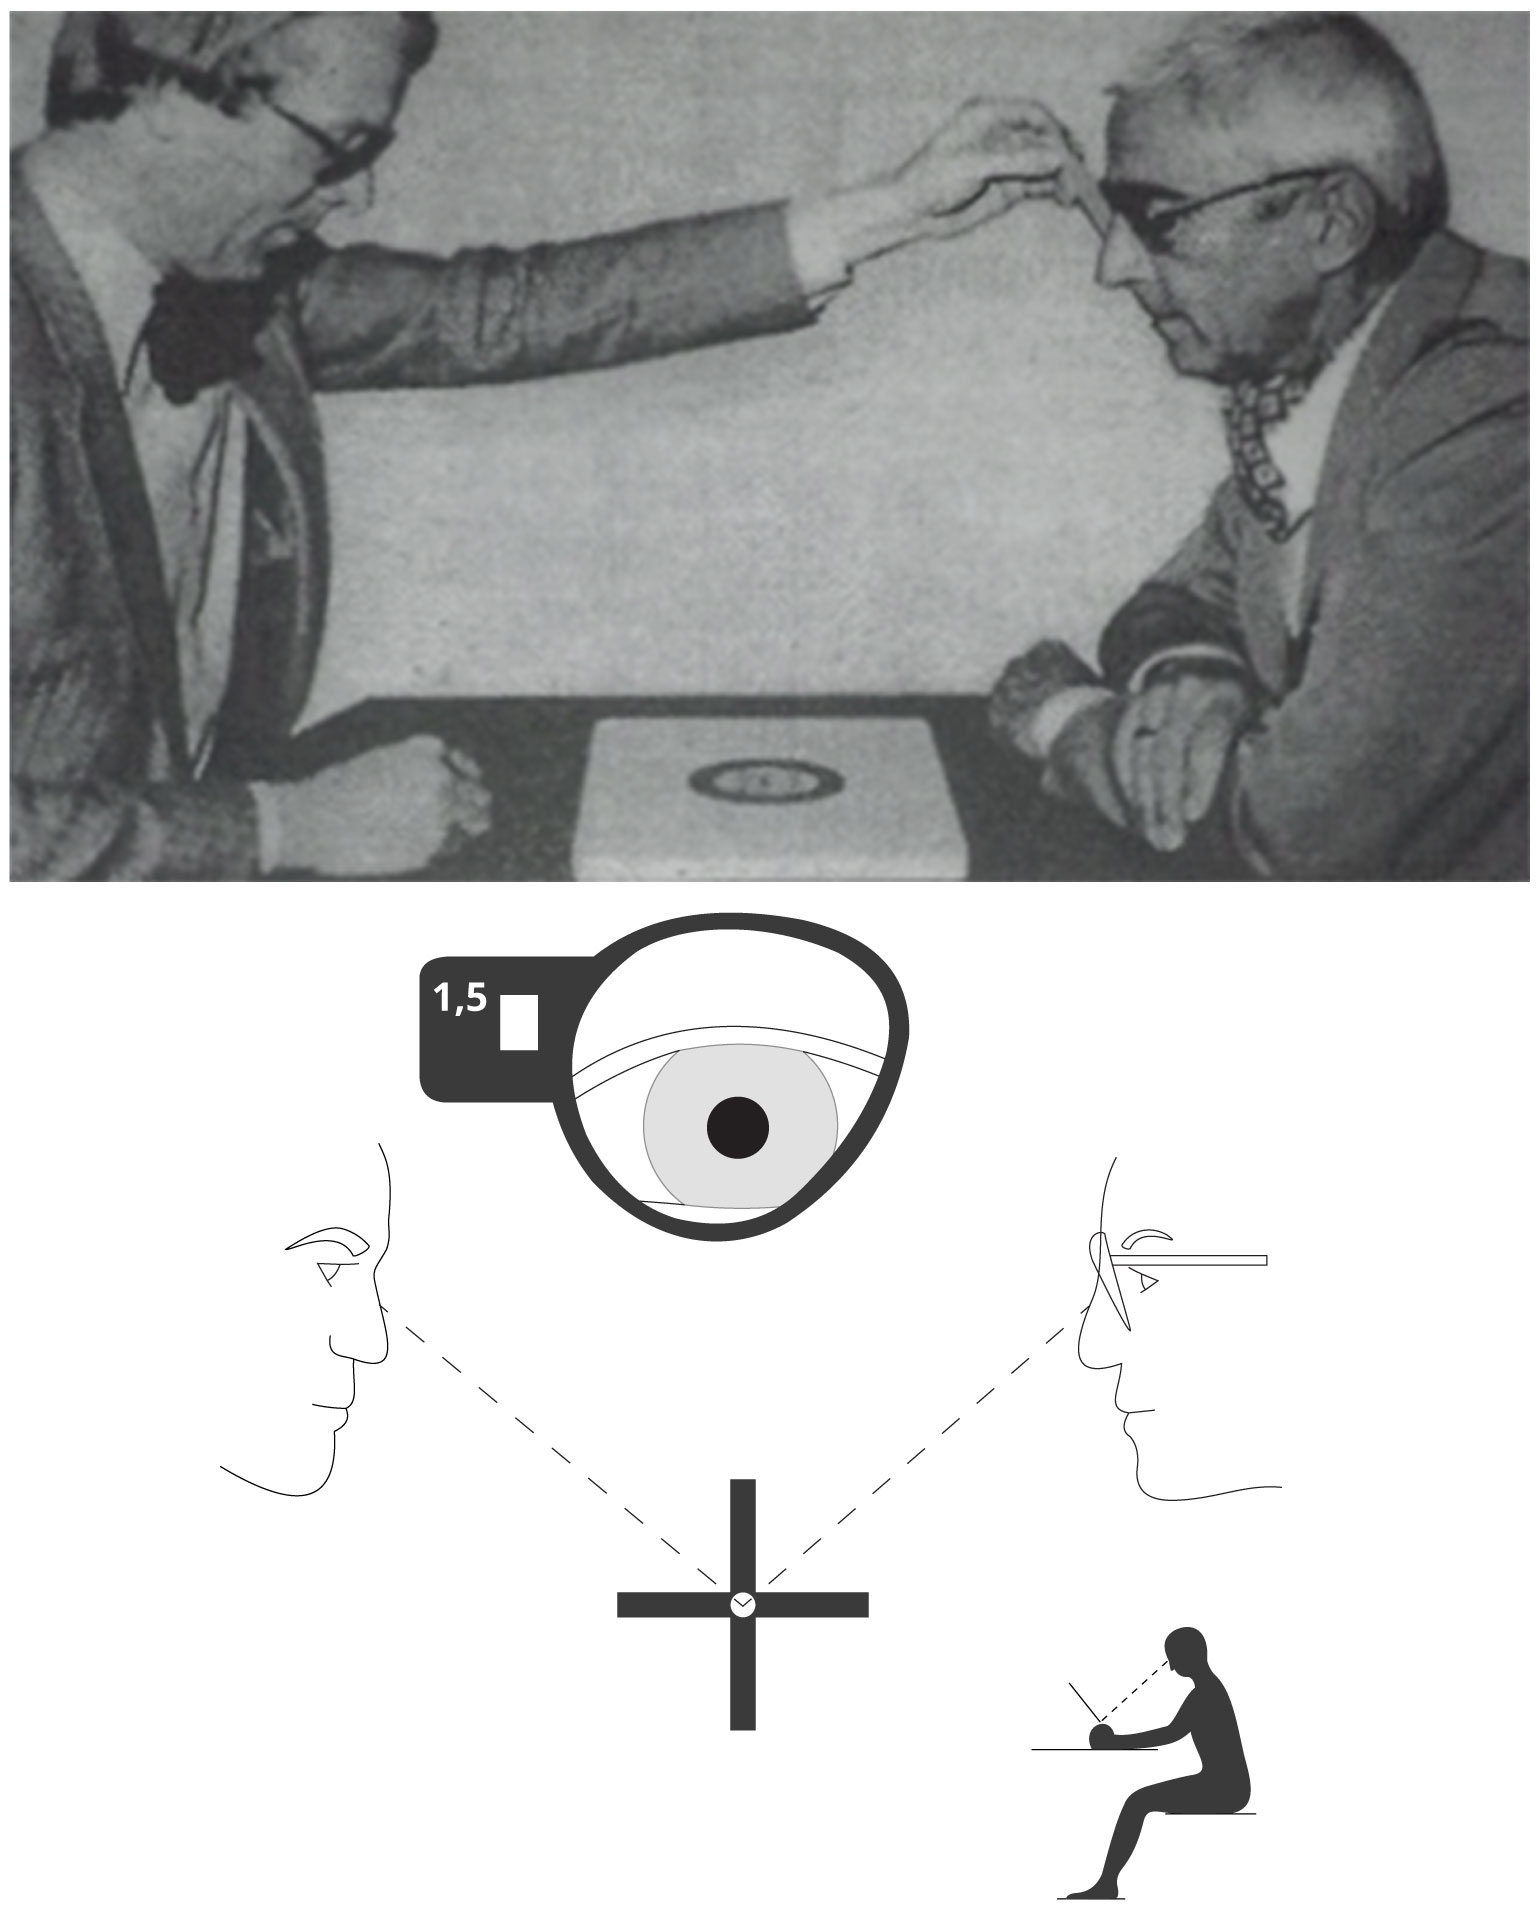 Mirror method for centration of progressive lenses